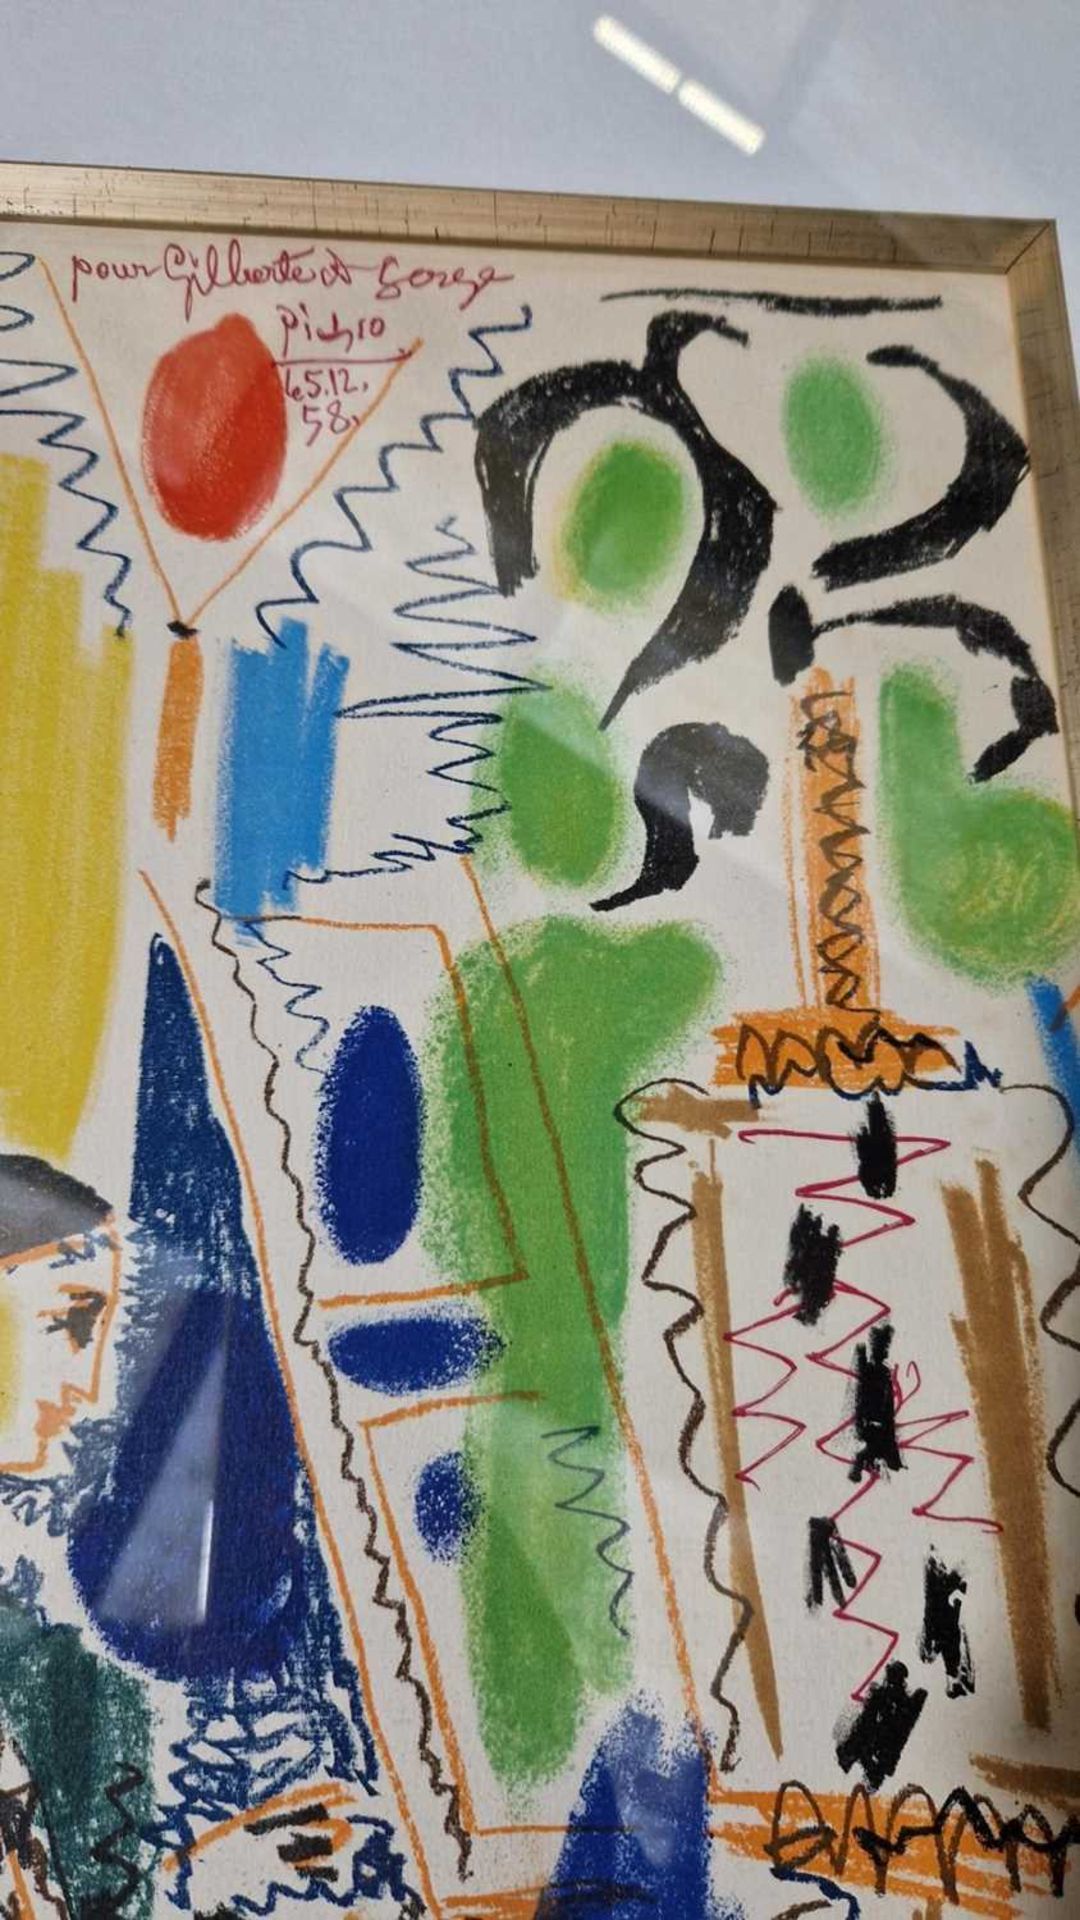 After Pablo Picasso (Spanish, 1881 - 1973), L'Atelier de Cannes (1958), colour lithograph, 43 x 30 c - Image 16 of 17